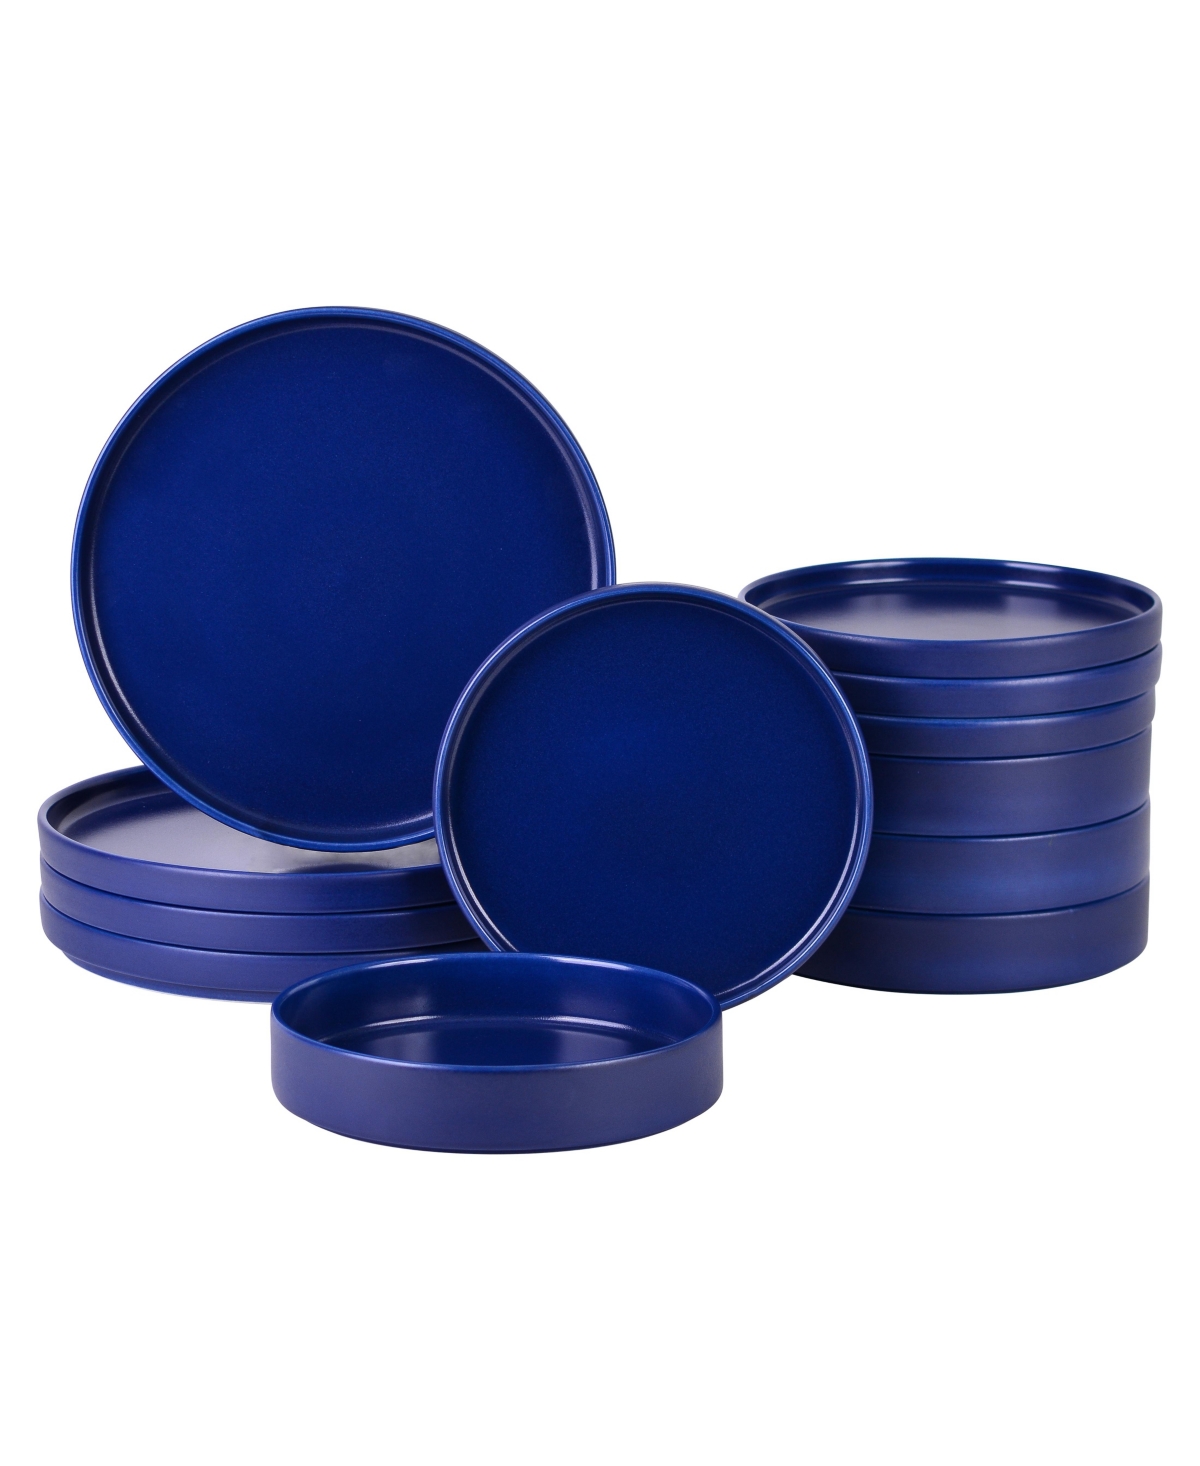 Kaden Stoneware 12 Piece Dinnerware Set, Service for 4 - Blue